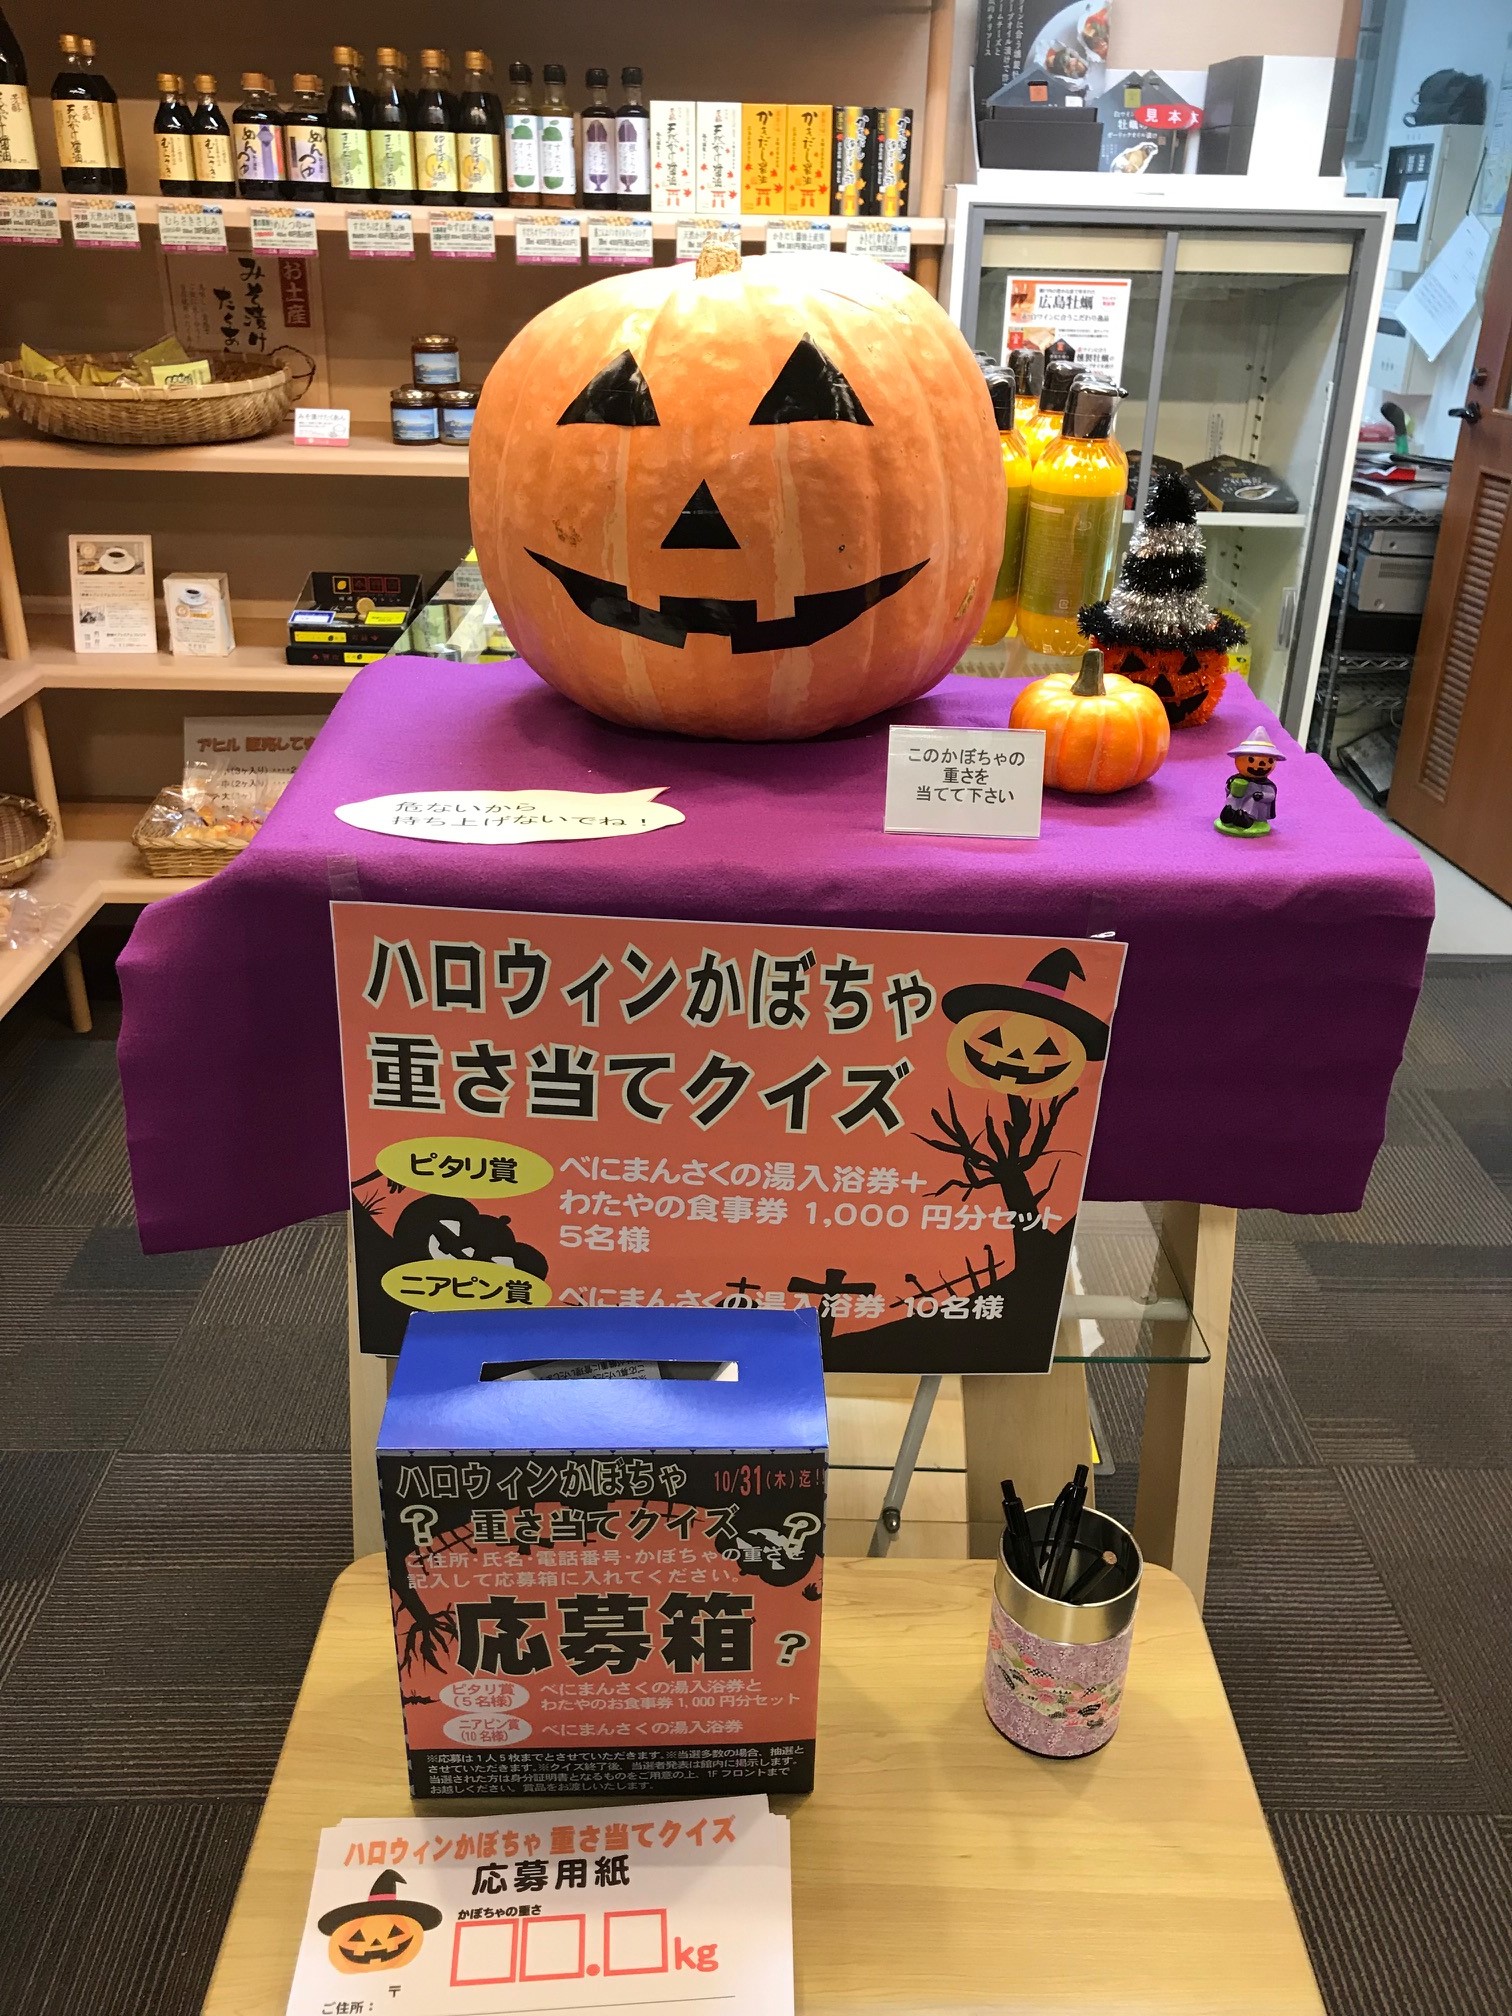 ハロウィン企画 かぼちゃの重さ当てクイズ 天然温泉 宮浜 べにまんさくの湯 新着情報